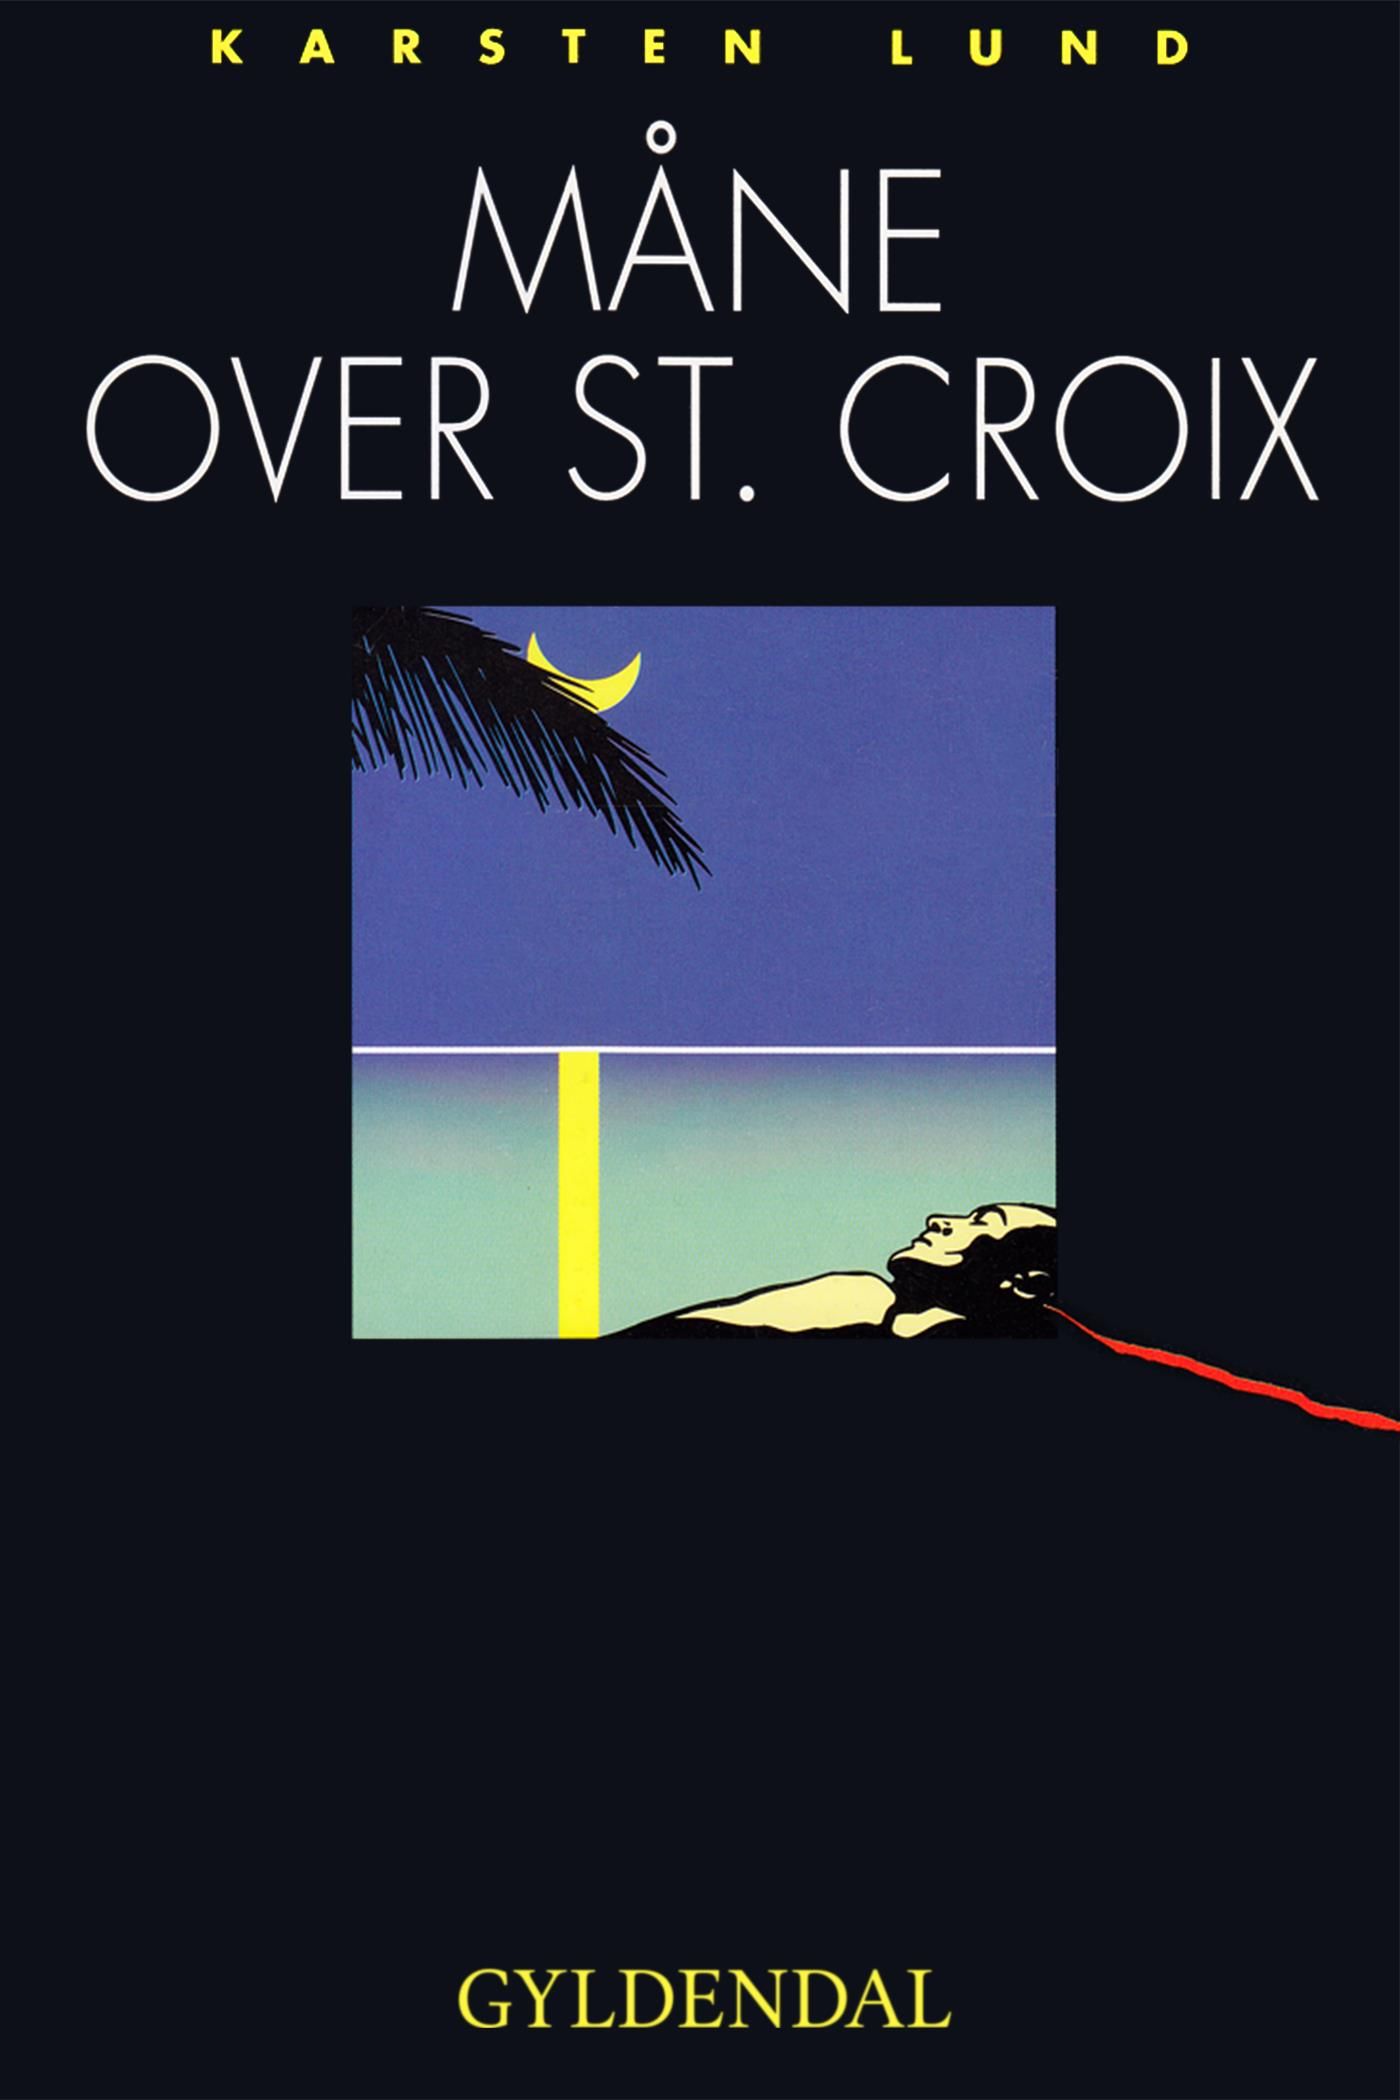 Måne over st. Croix, e-bok av Karsten Lund